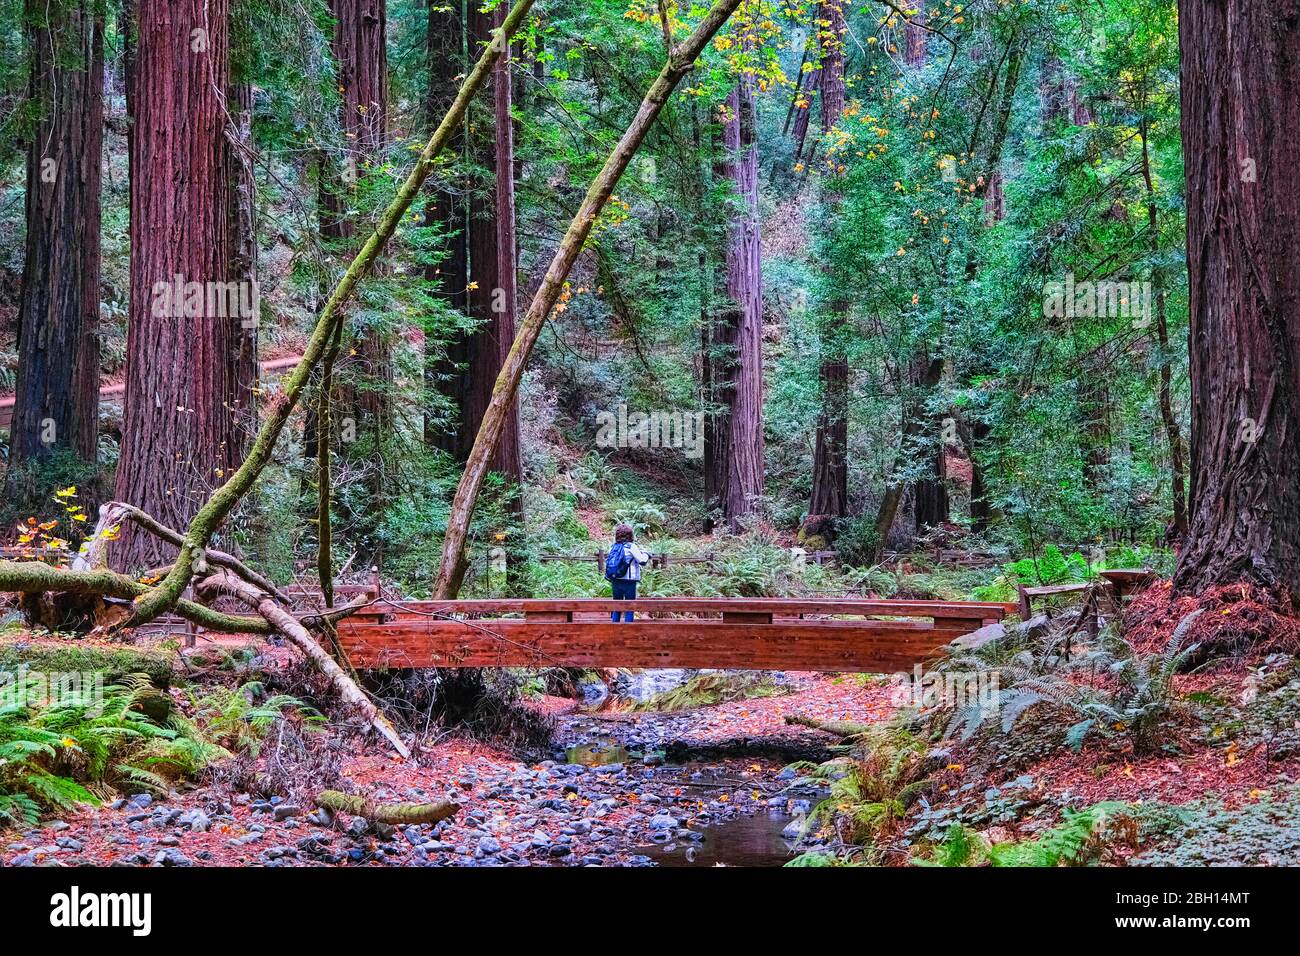 SAN FRANCISCO, CALIFORNIE - 12 novembre 2019 : le monument national de Muir Woods est un monument national des États-Unis géré par le National Park Service, Banque D'Images